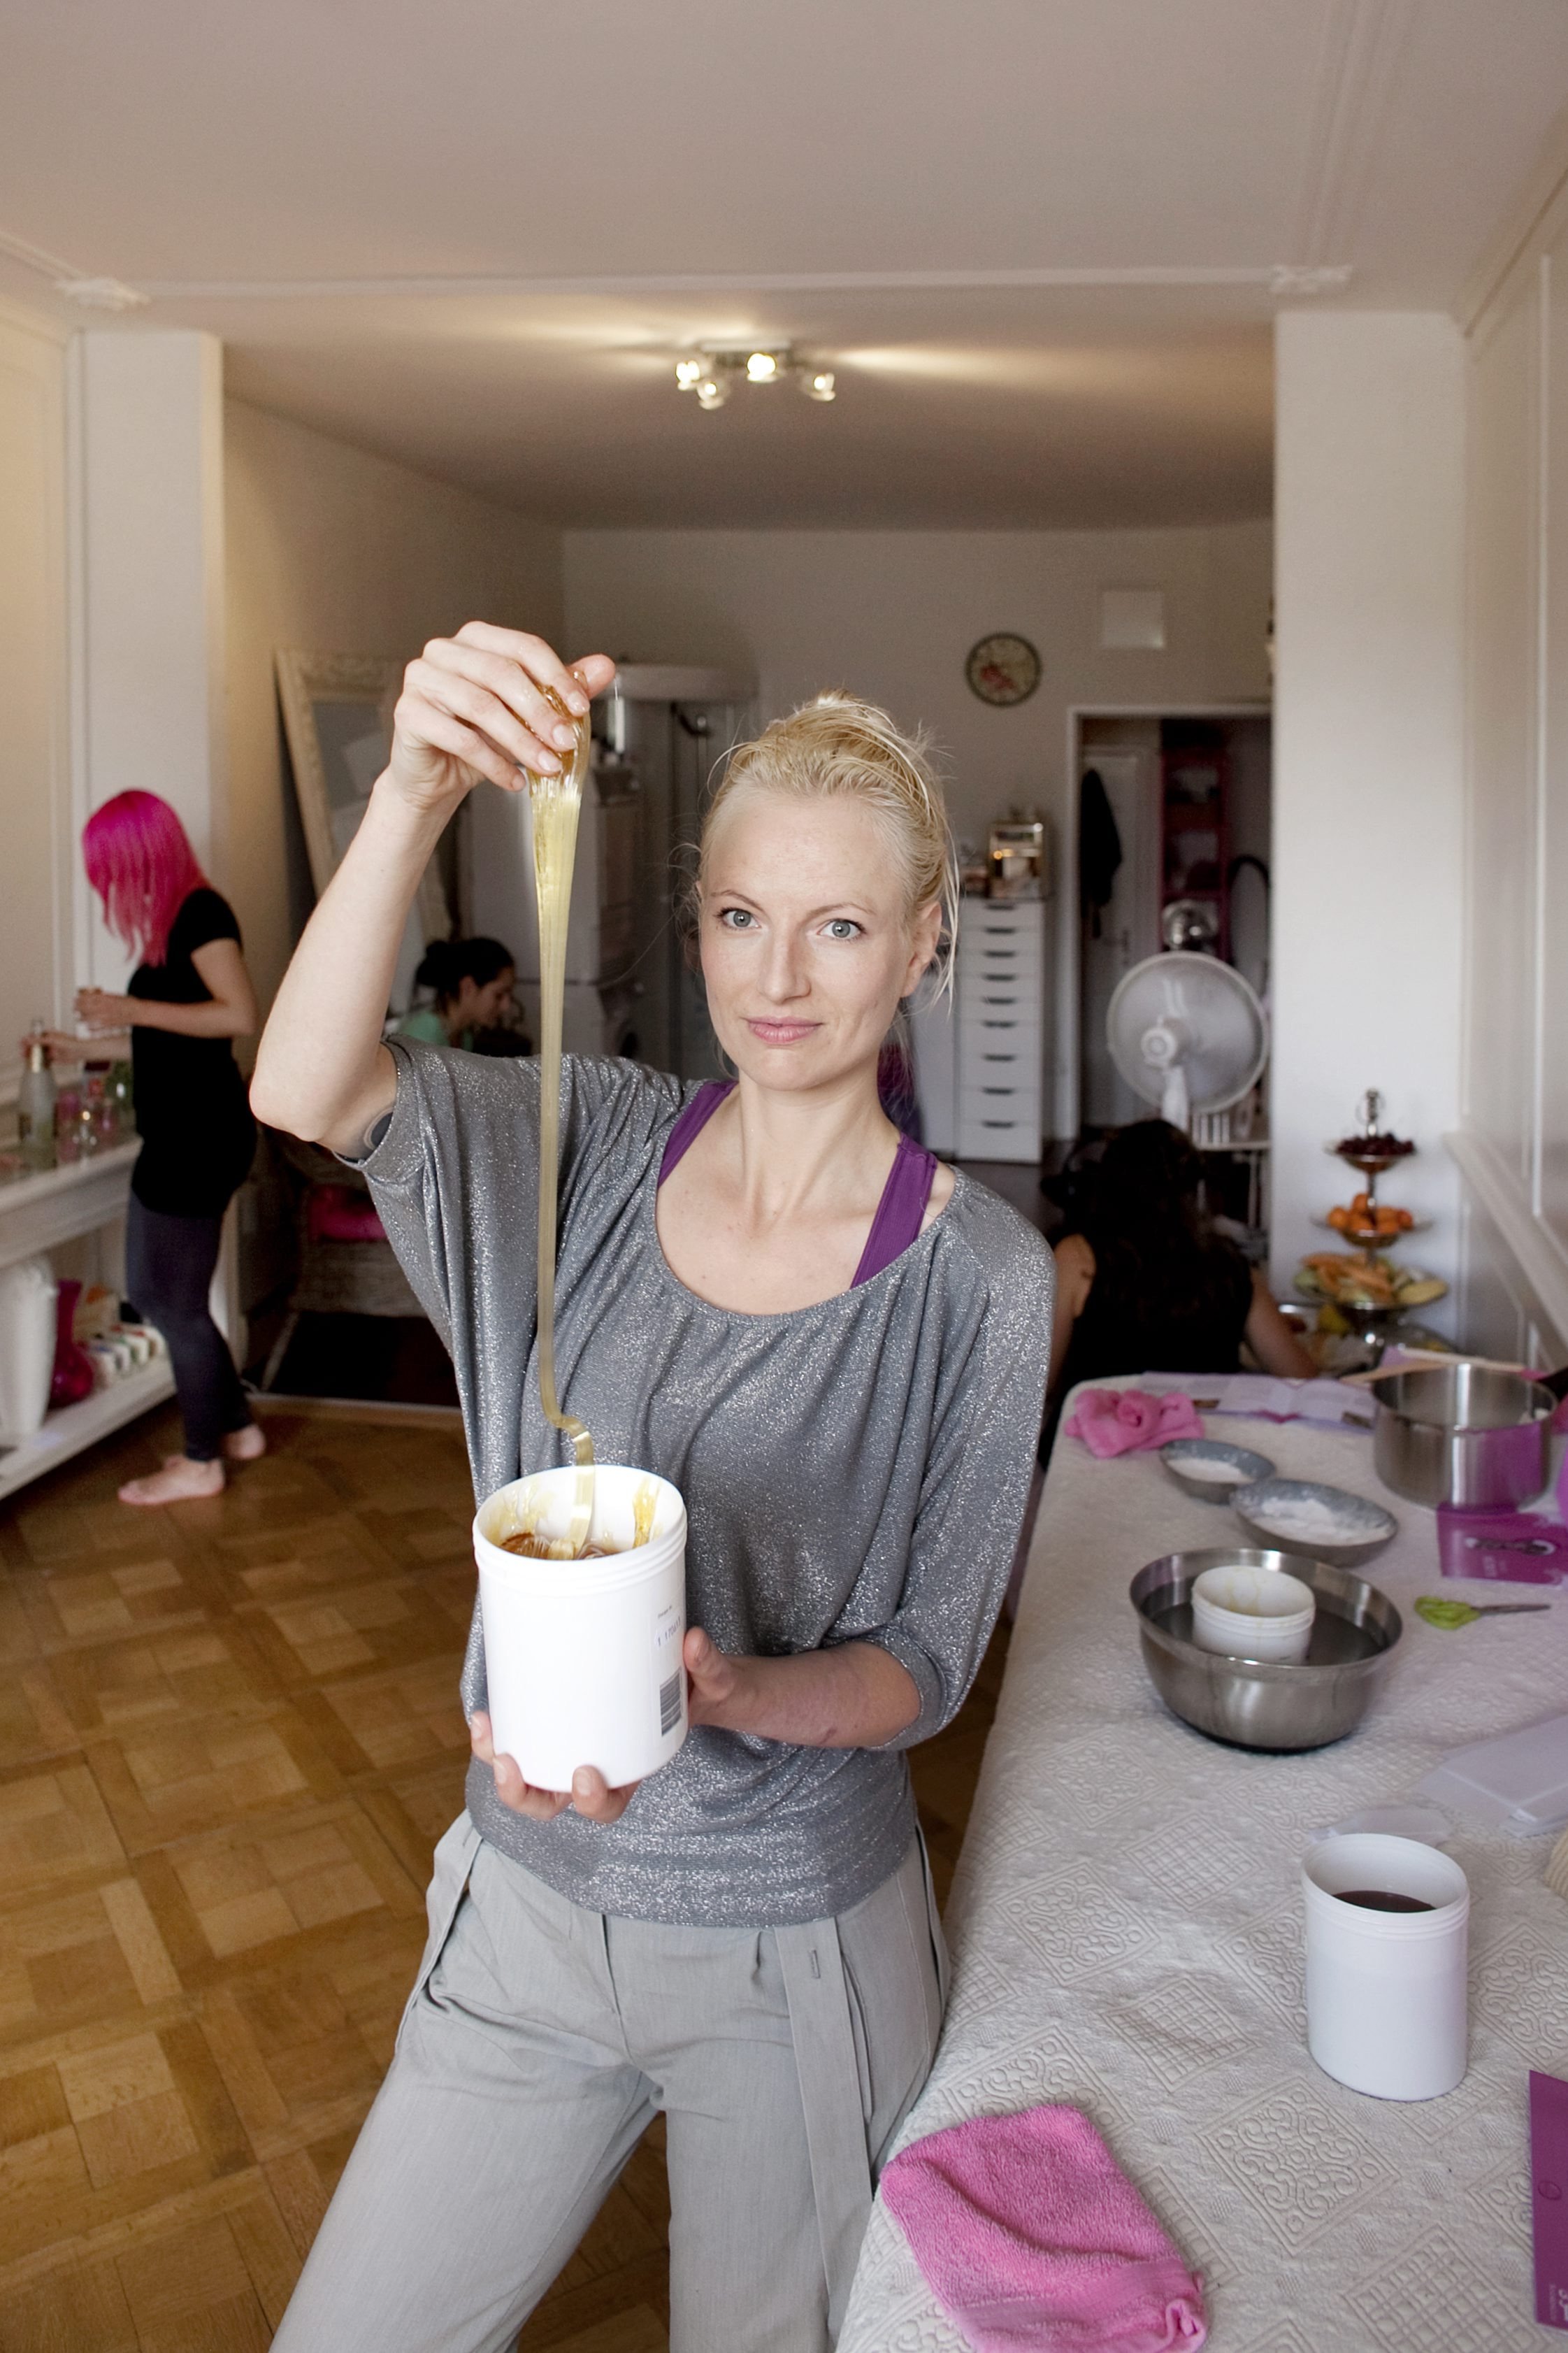  Sugaring Shaba-Workshop: Haare entfernen mit Zuckergel.
Workshopleiterin Marianne Weiss. 